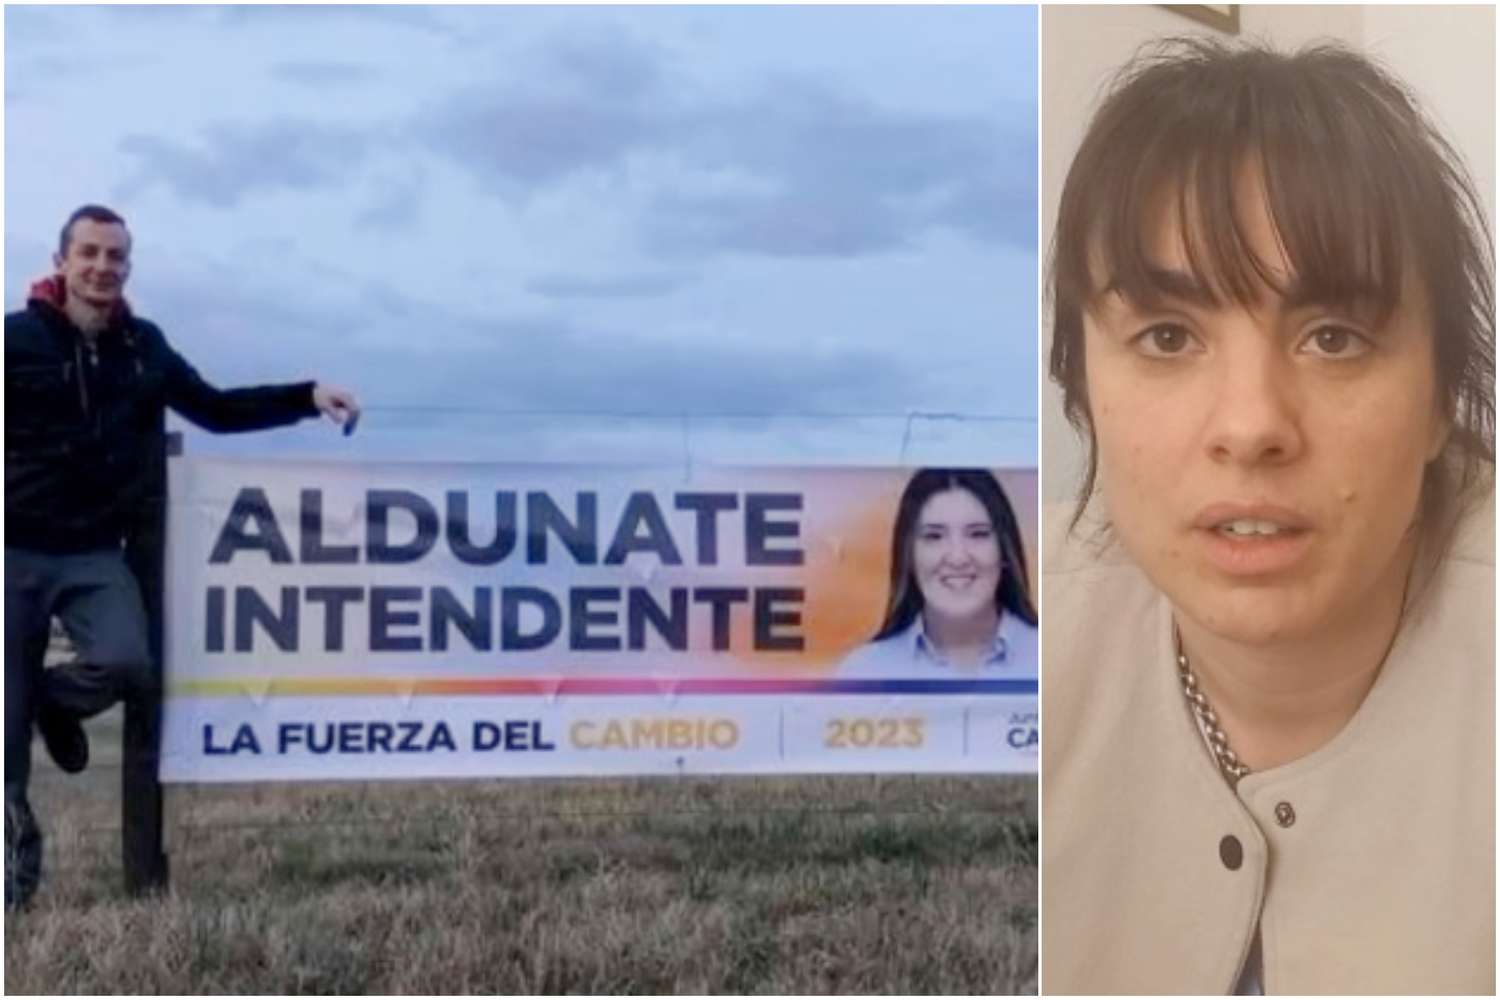 Se picó la campaña en Villarino: "El robo de carteles hace que la cosa se empiece a ensuciar", denuncian en JxC